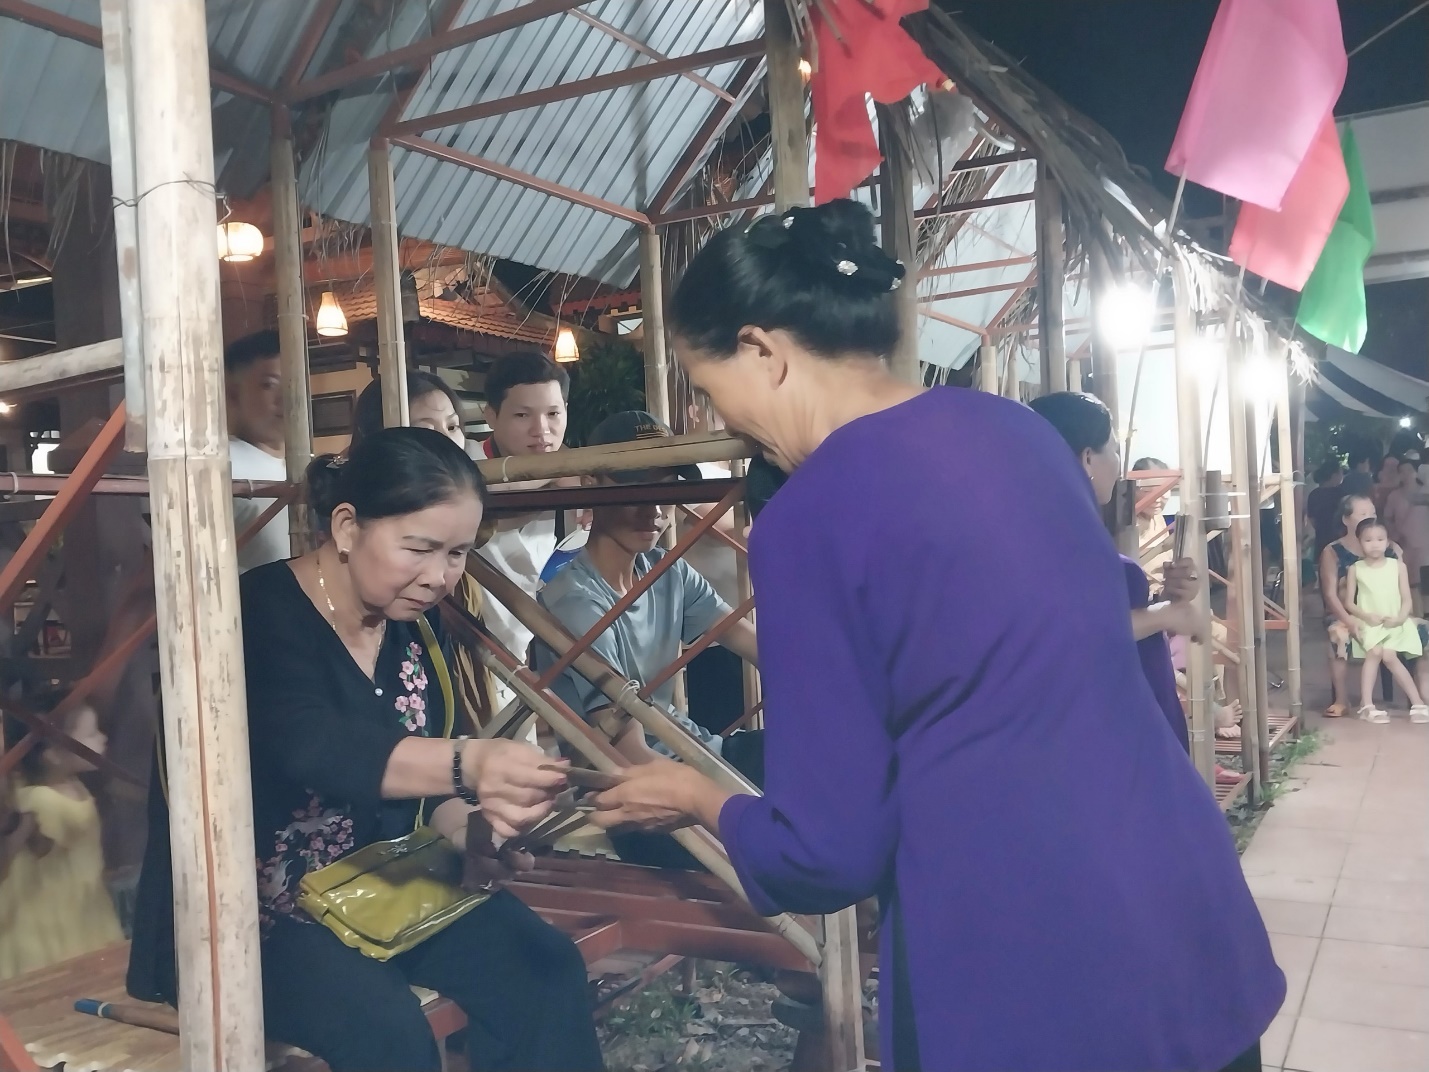 Vui nhộn ‘Chợ quê ngày hội’ bên cây cầu nổi tiếng xứ Huế - 5